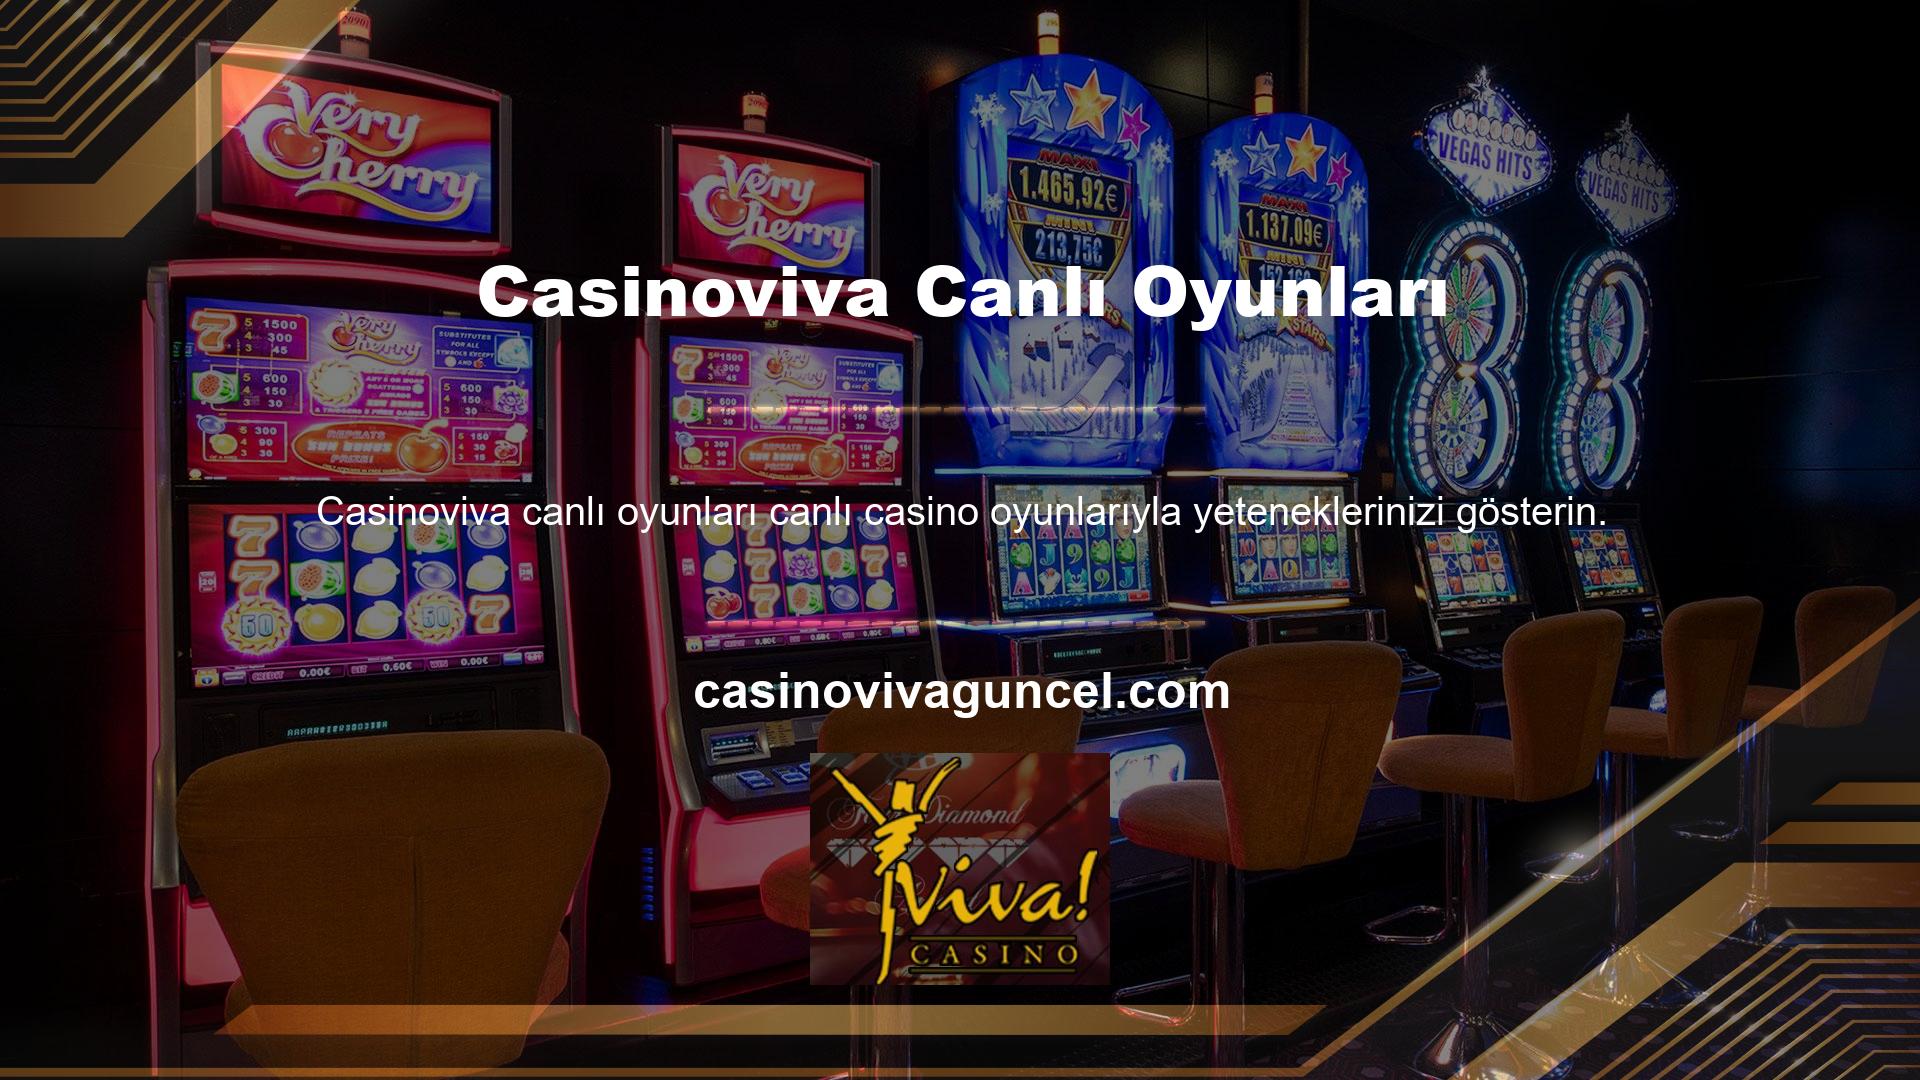 Casinoviva özel tasarlanmış oyun lobisinde gerçek parayla oyun tutkunları ile poker, blackjack, rulet ve bakara oynayabilirsiniz